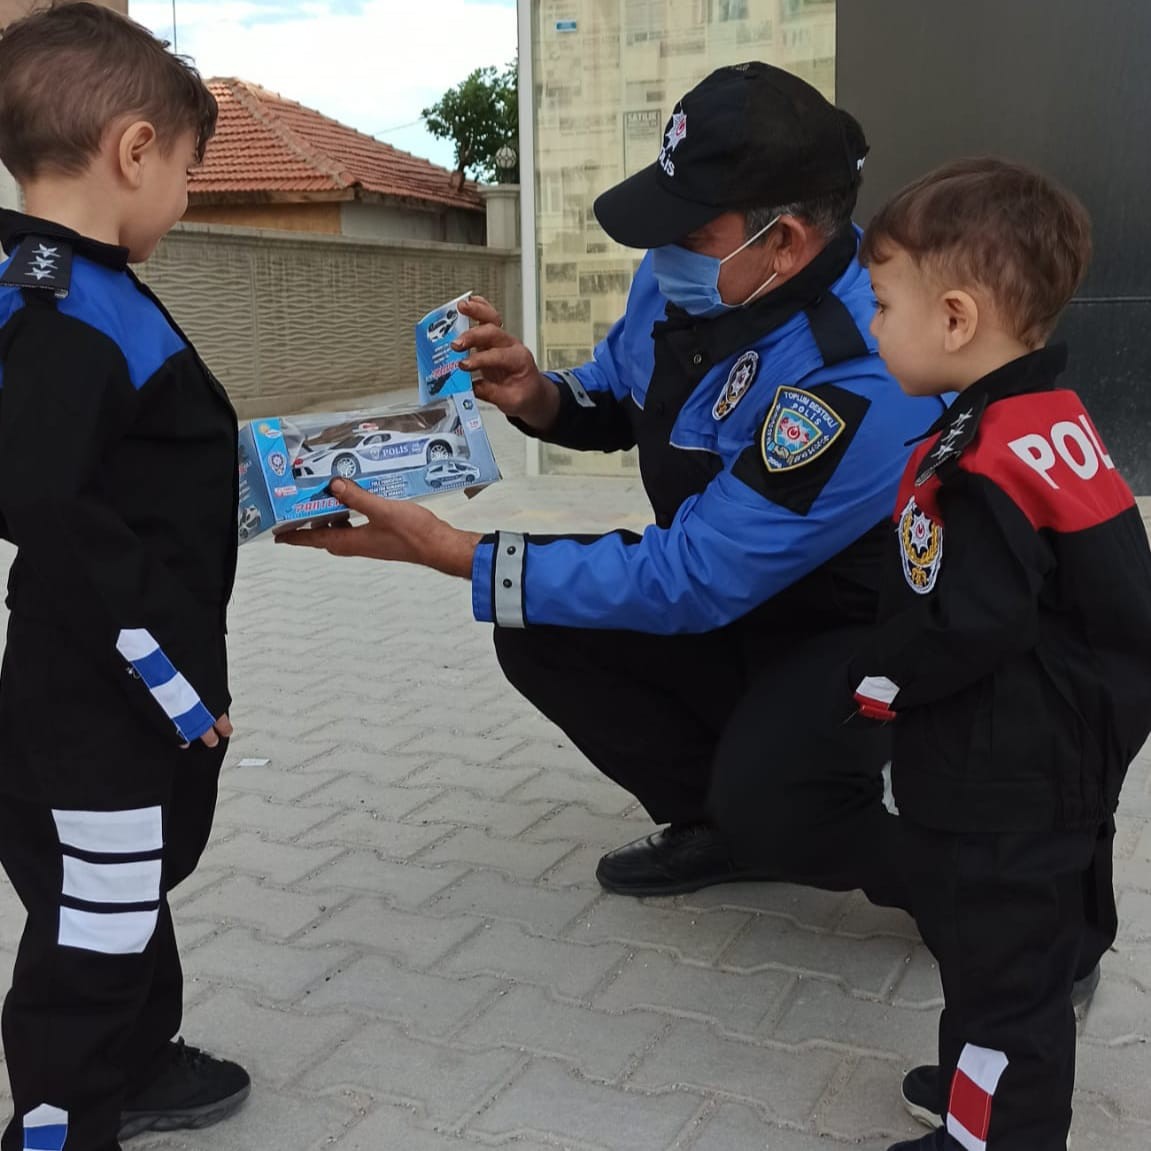 Konya Polisi küçük Eymen ve Uras’ın hayalini gerçekleştirdi #konya